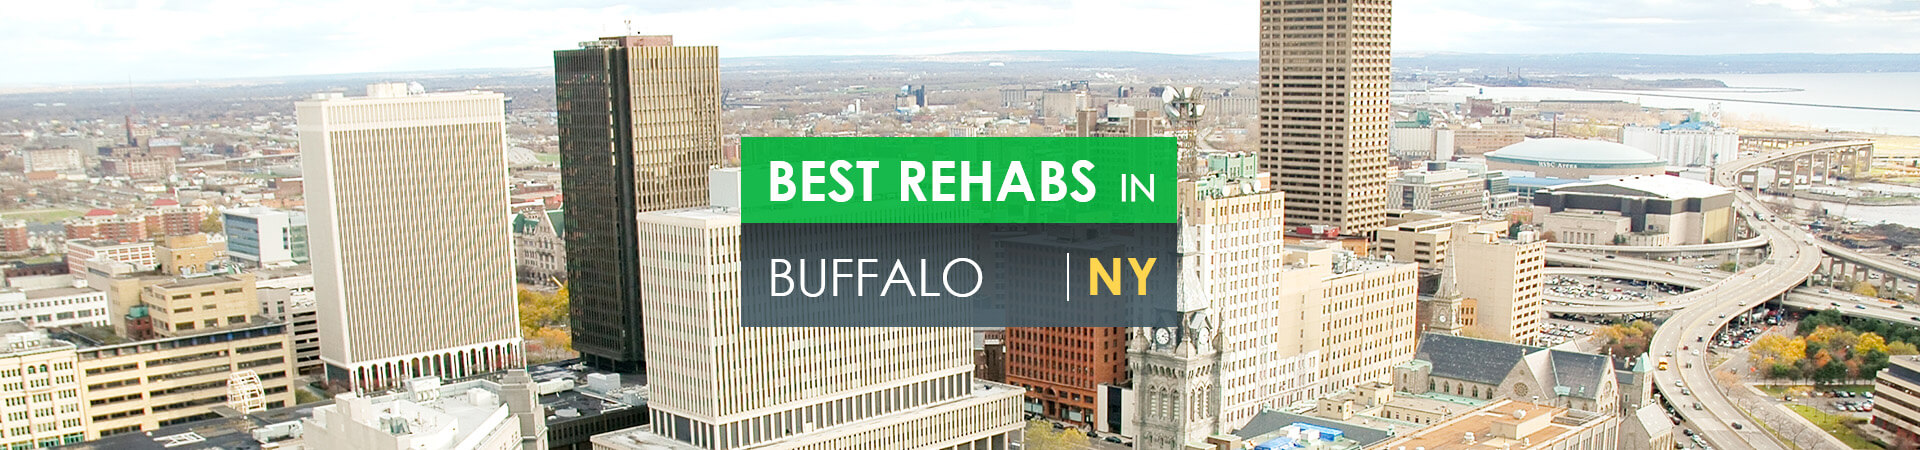 Best rehabs in Buffalo, NY